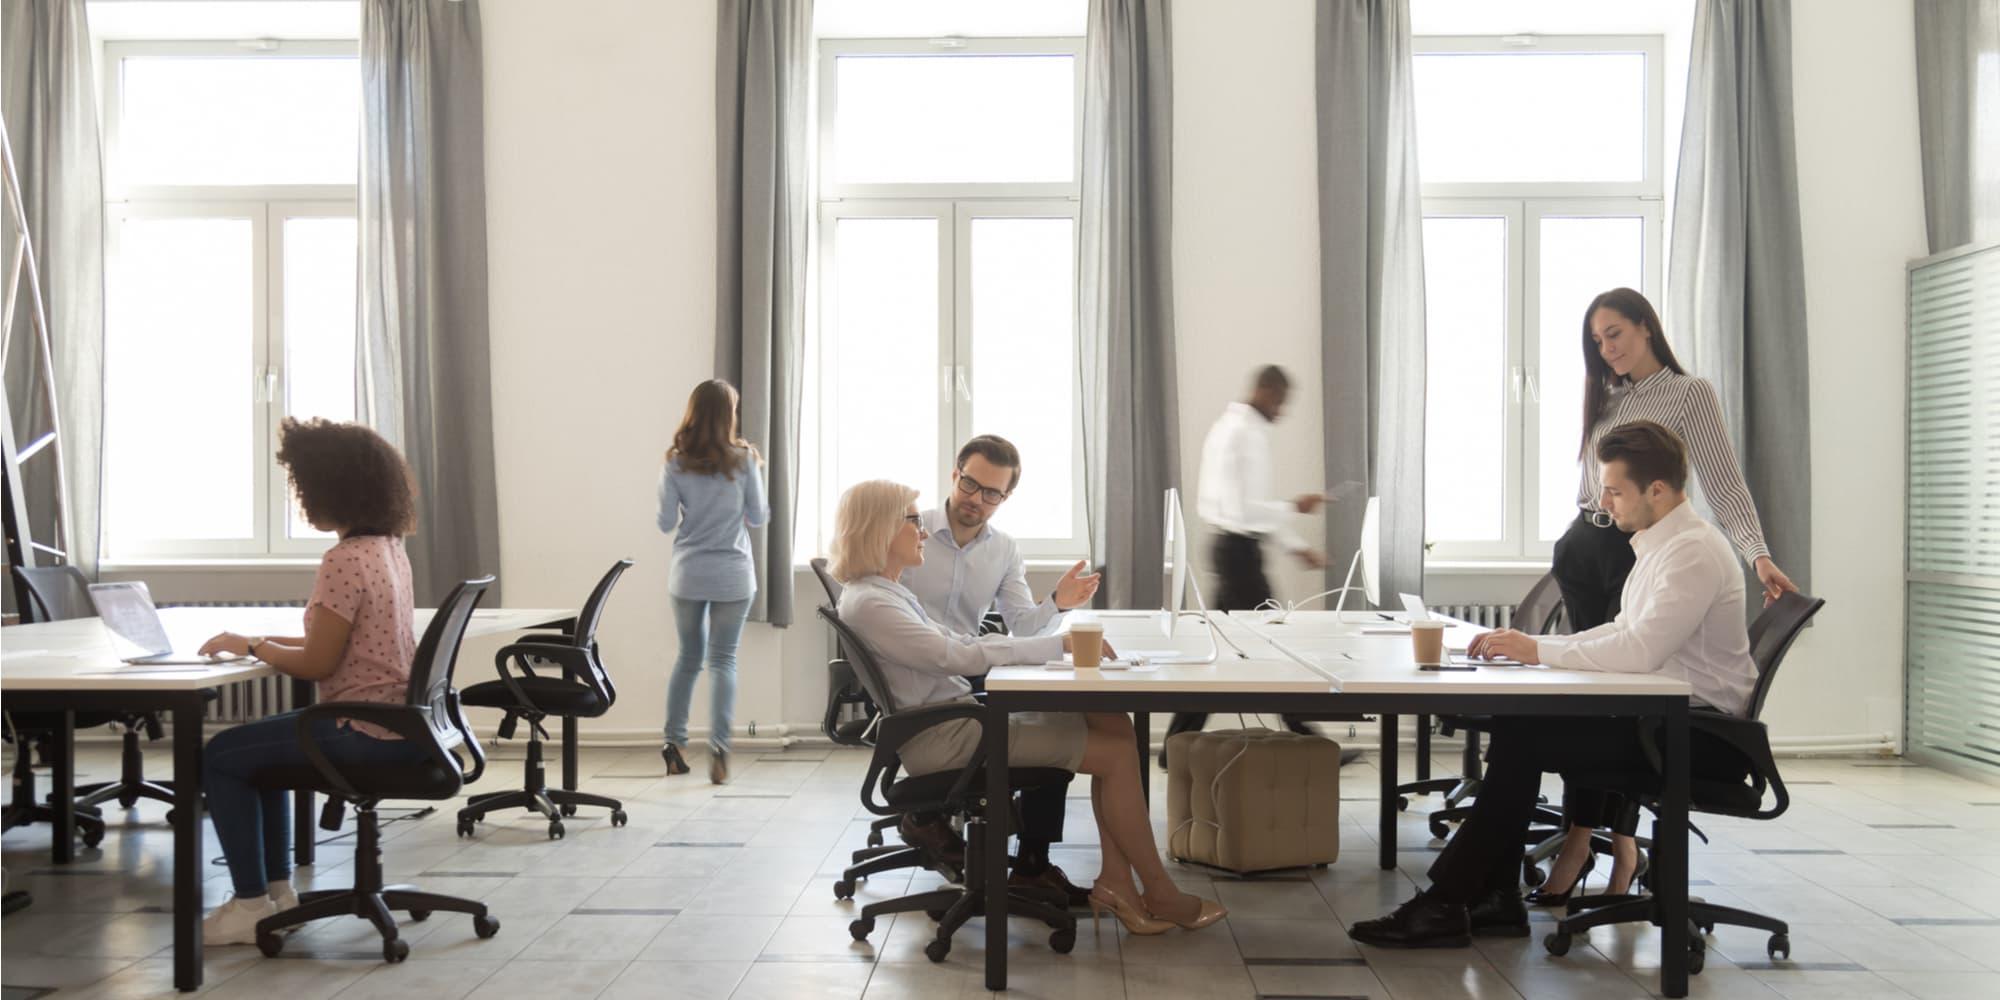 繁忙的公司部门成员，员工一起工作，坐在共享的桌子上，使用电脑，在现代的共同工作空间，室内日光透过窗户